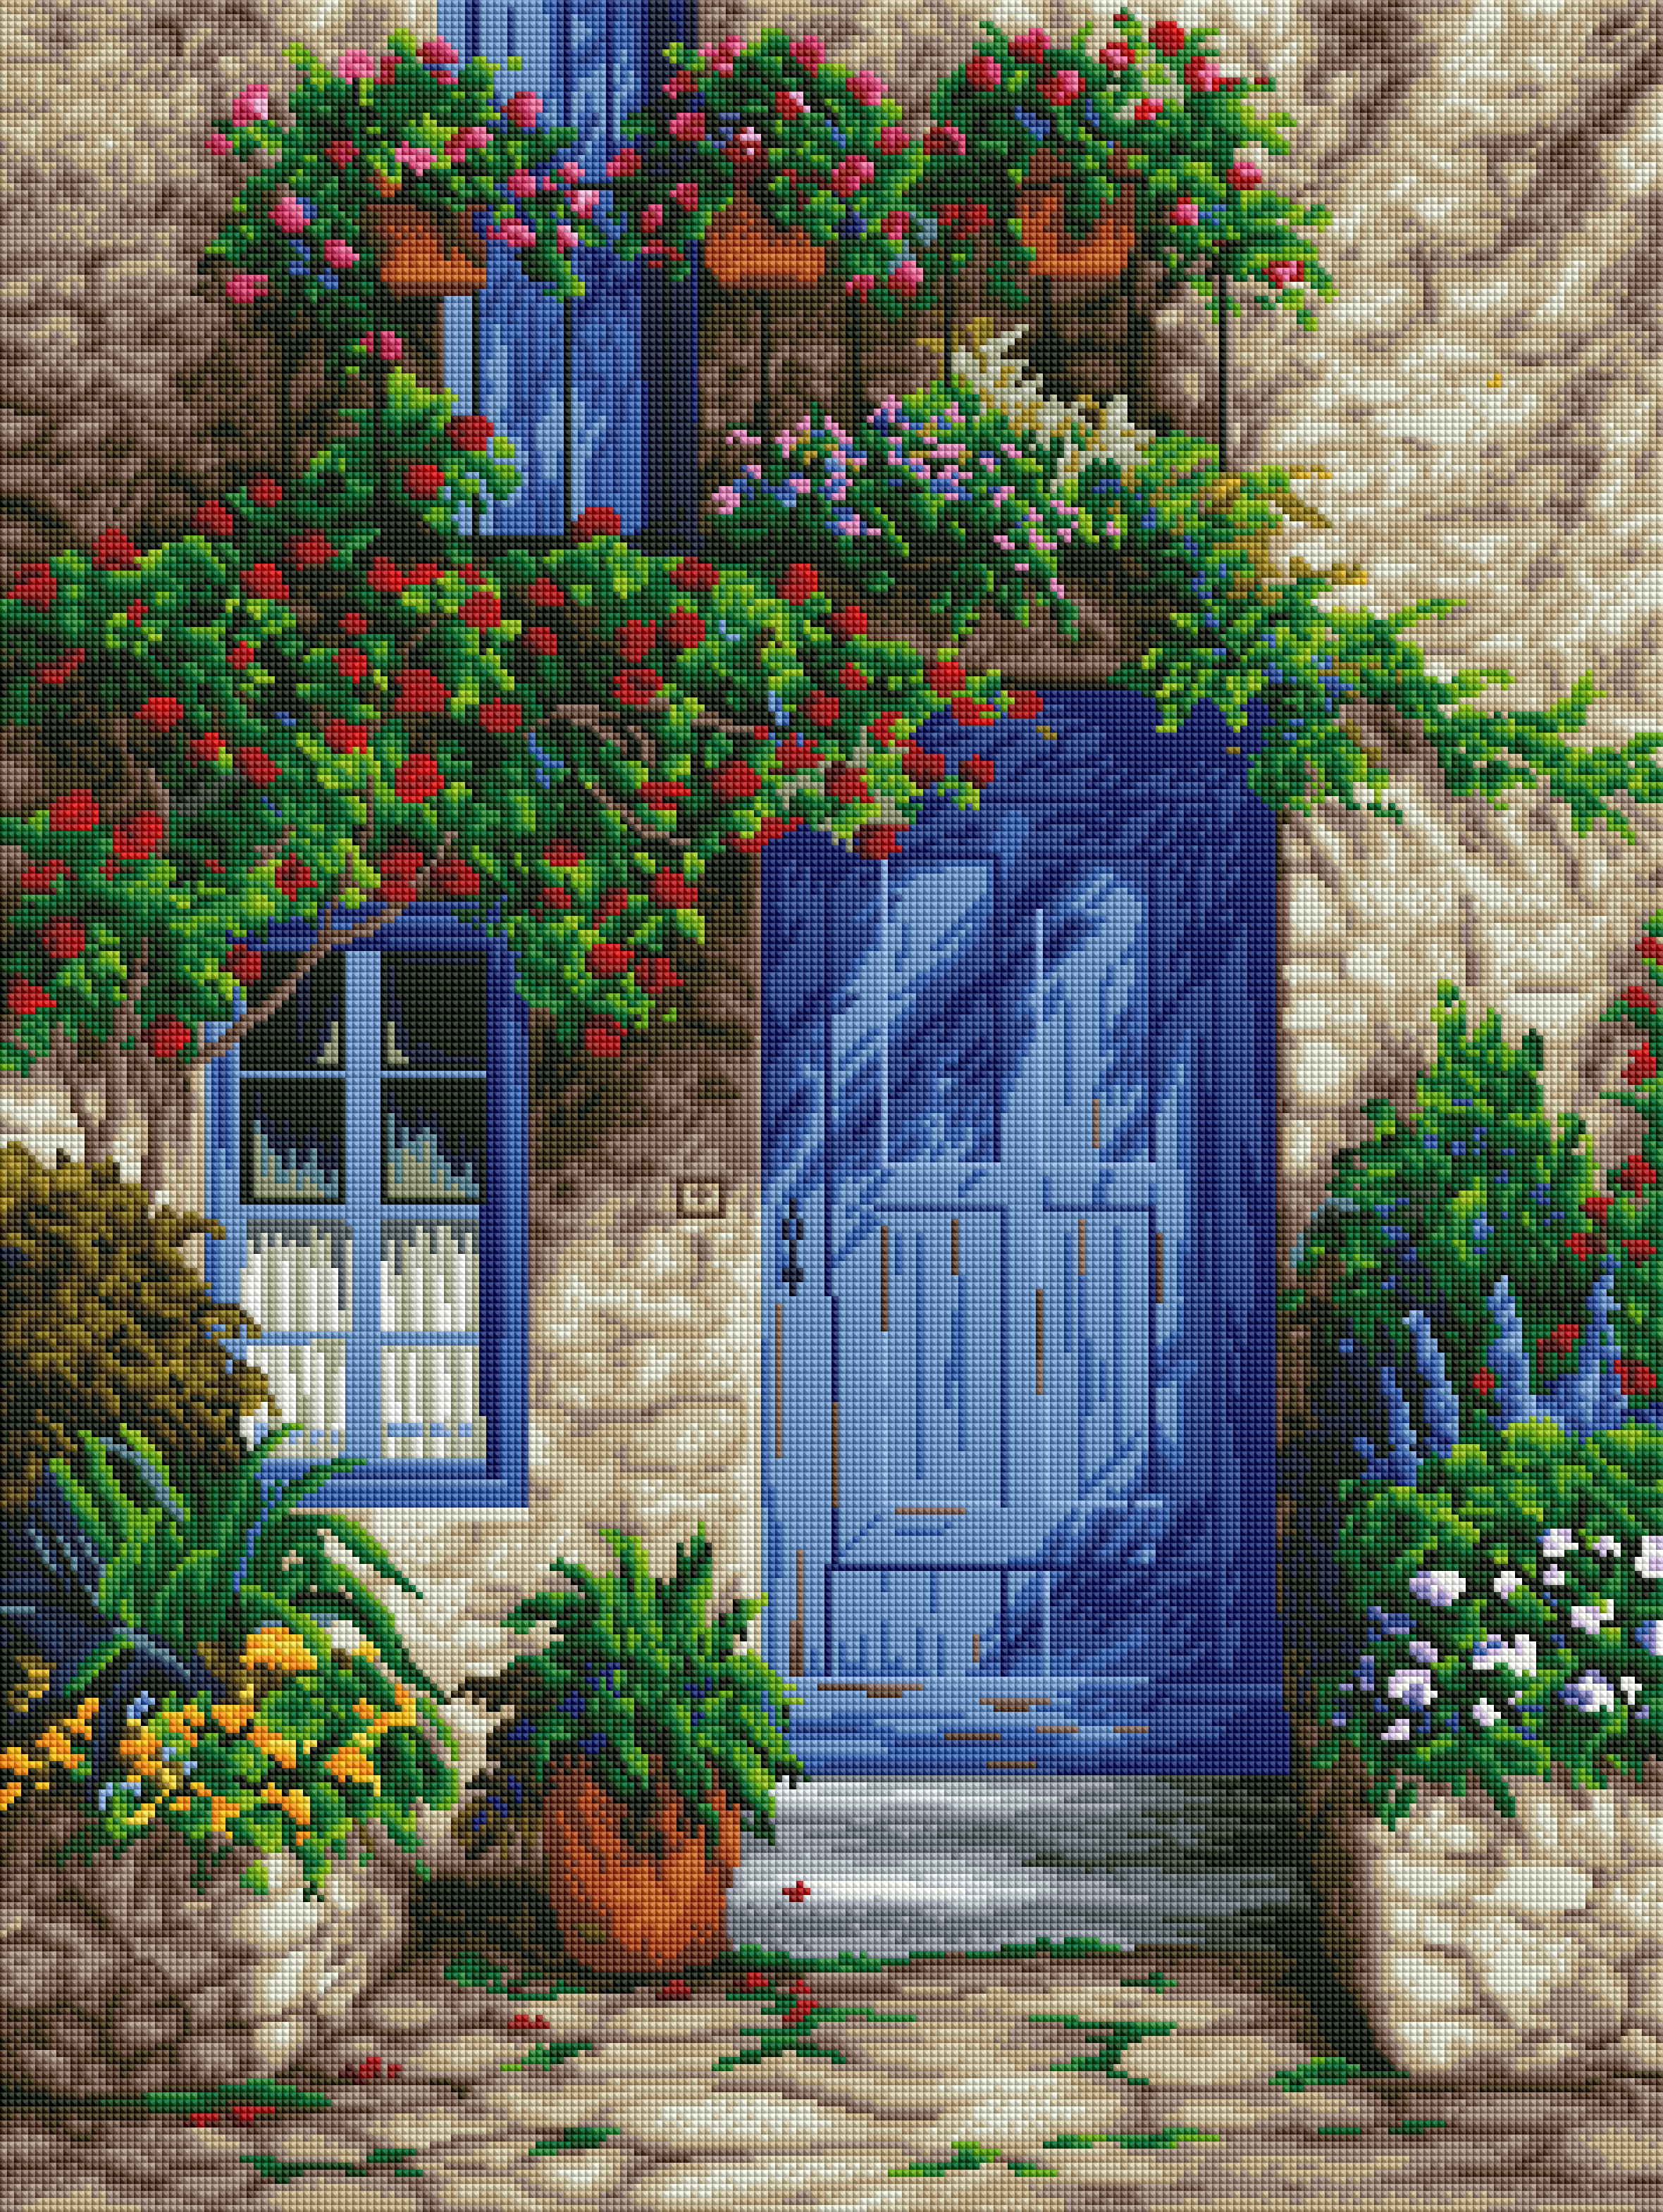 Provence Blue Door